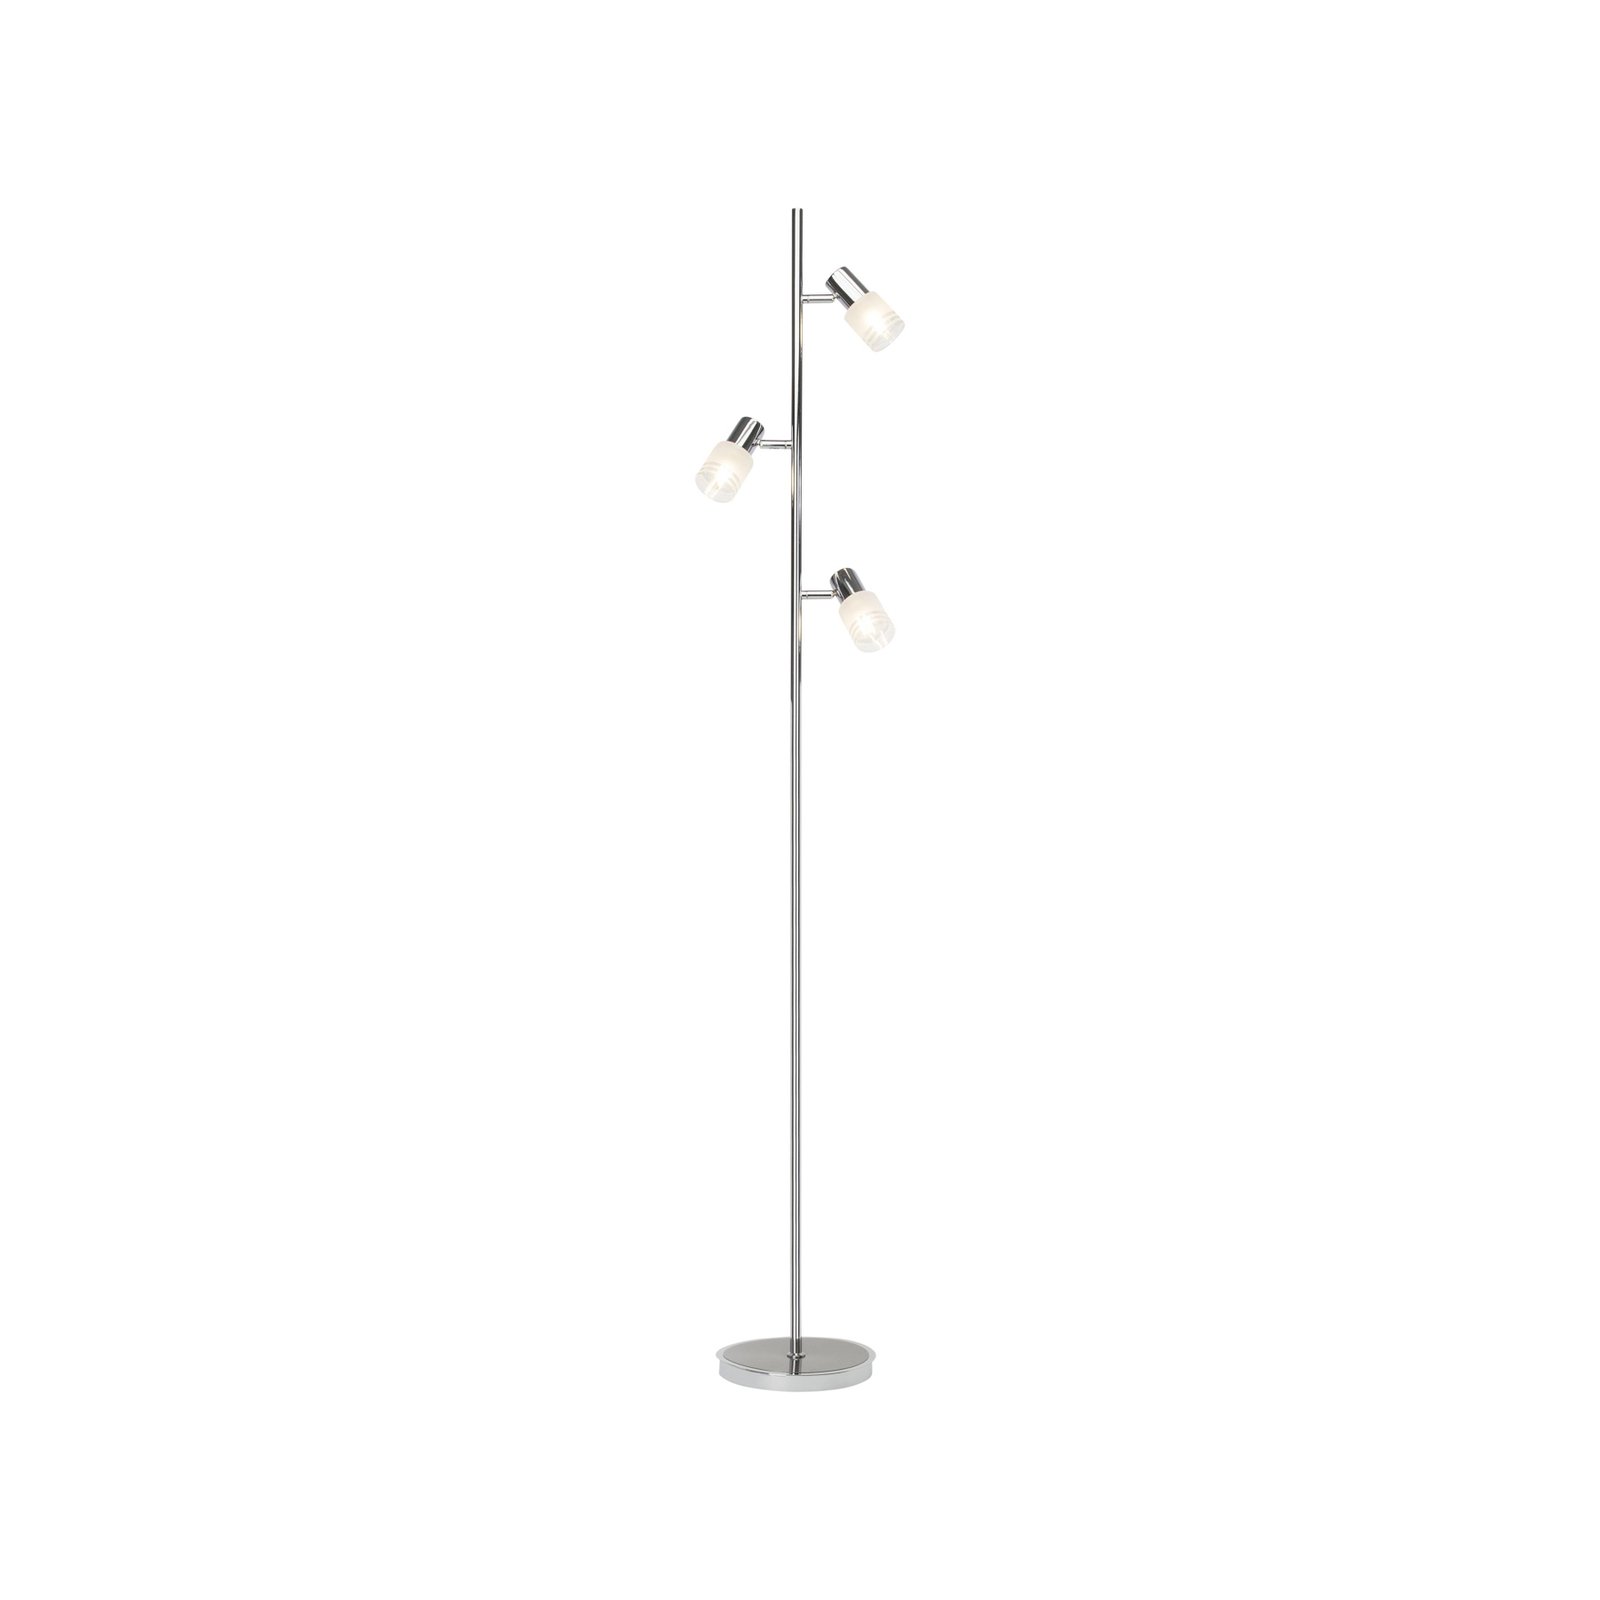 LED stojacia lampa Lea, výška 157,5 cm, chróm, 3 svetlá, kov